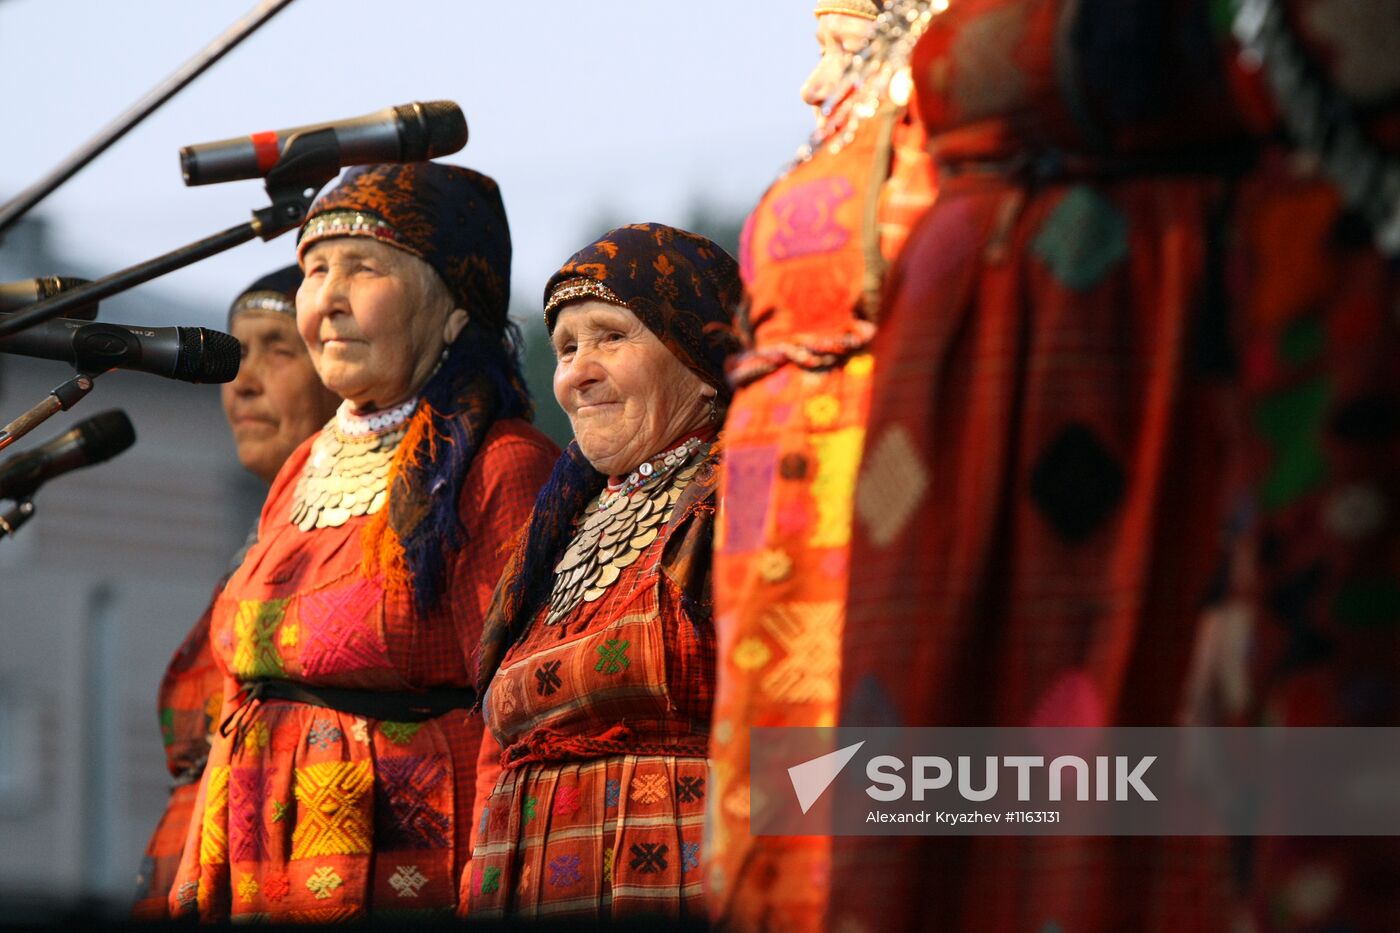 Buranovskiye Babushki ethno-pop band performs in Novosibirsk